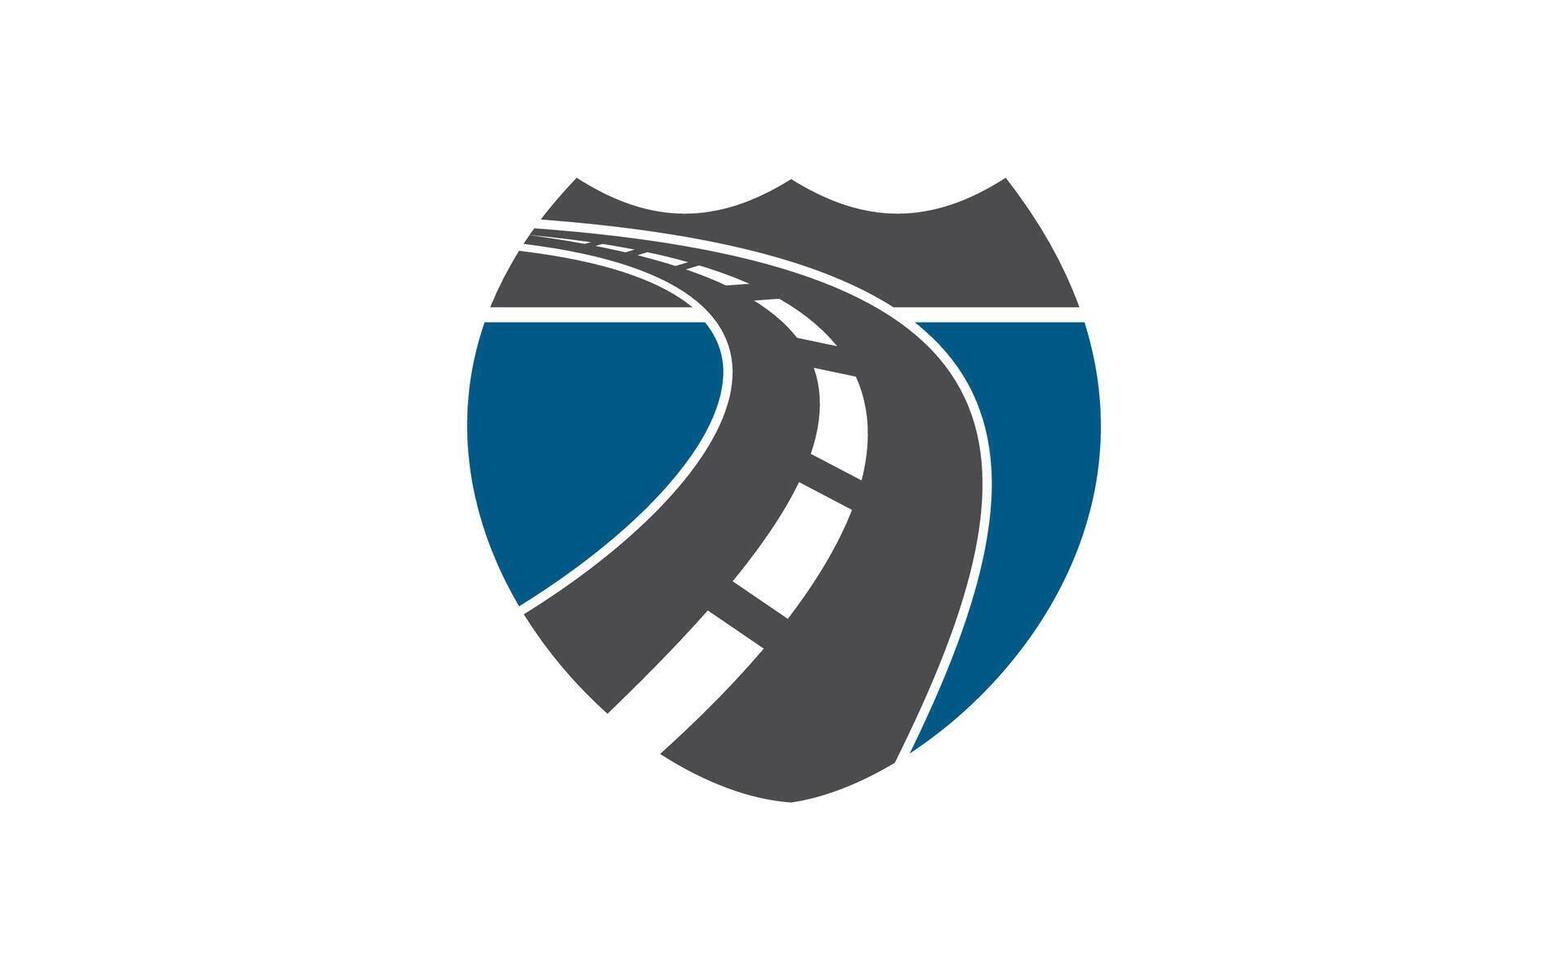 Road shield safe transport logo design vector